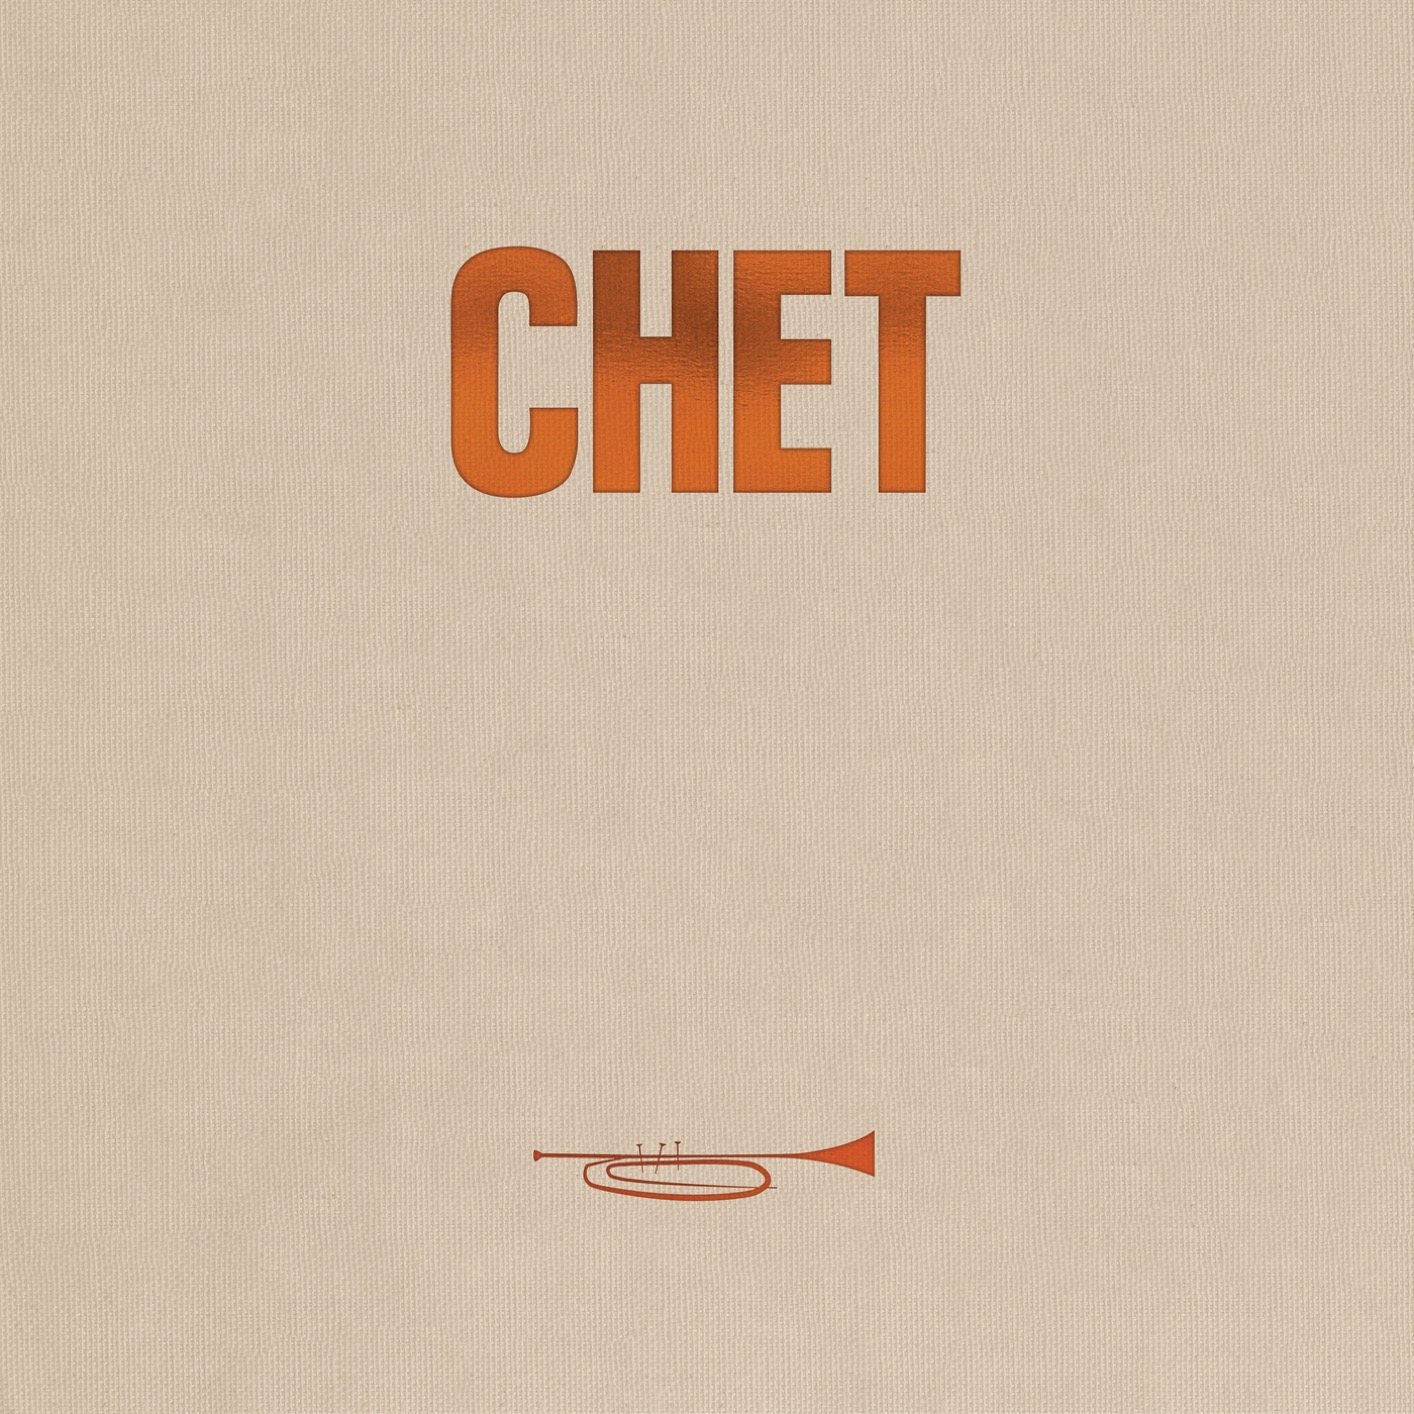 Chet Baker - The Legendary Riverside Albums (2019) [FLAC 24bit/192kHz]